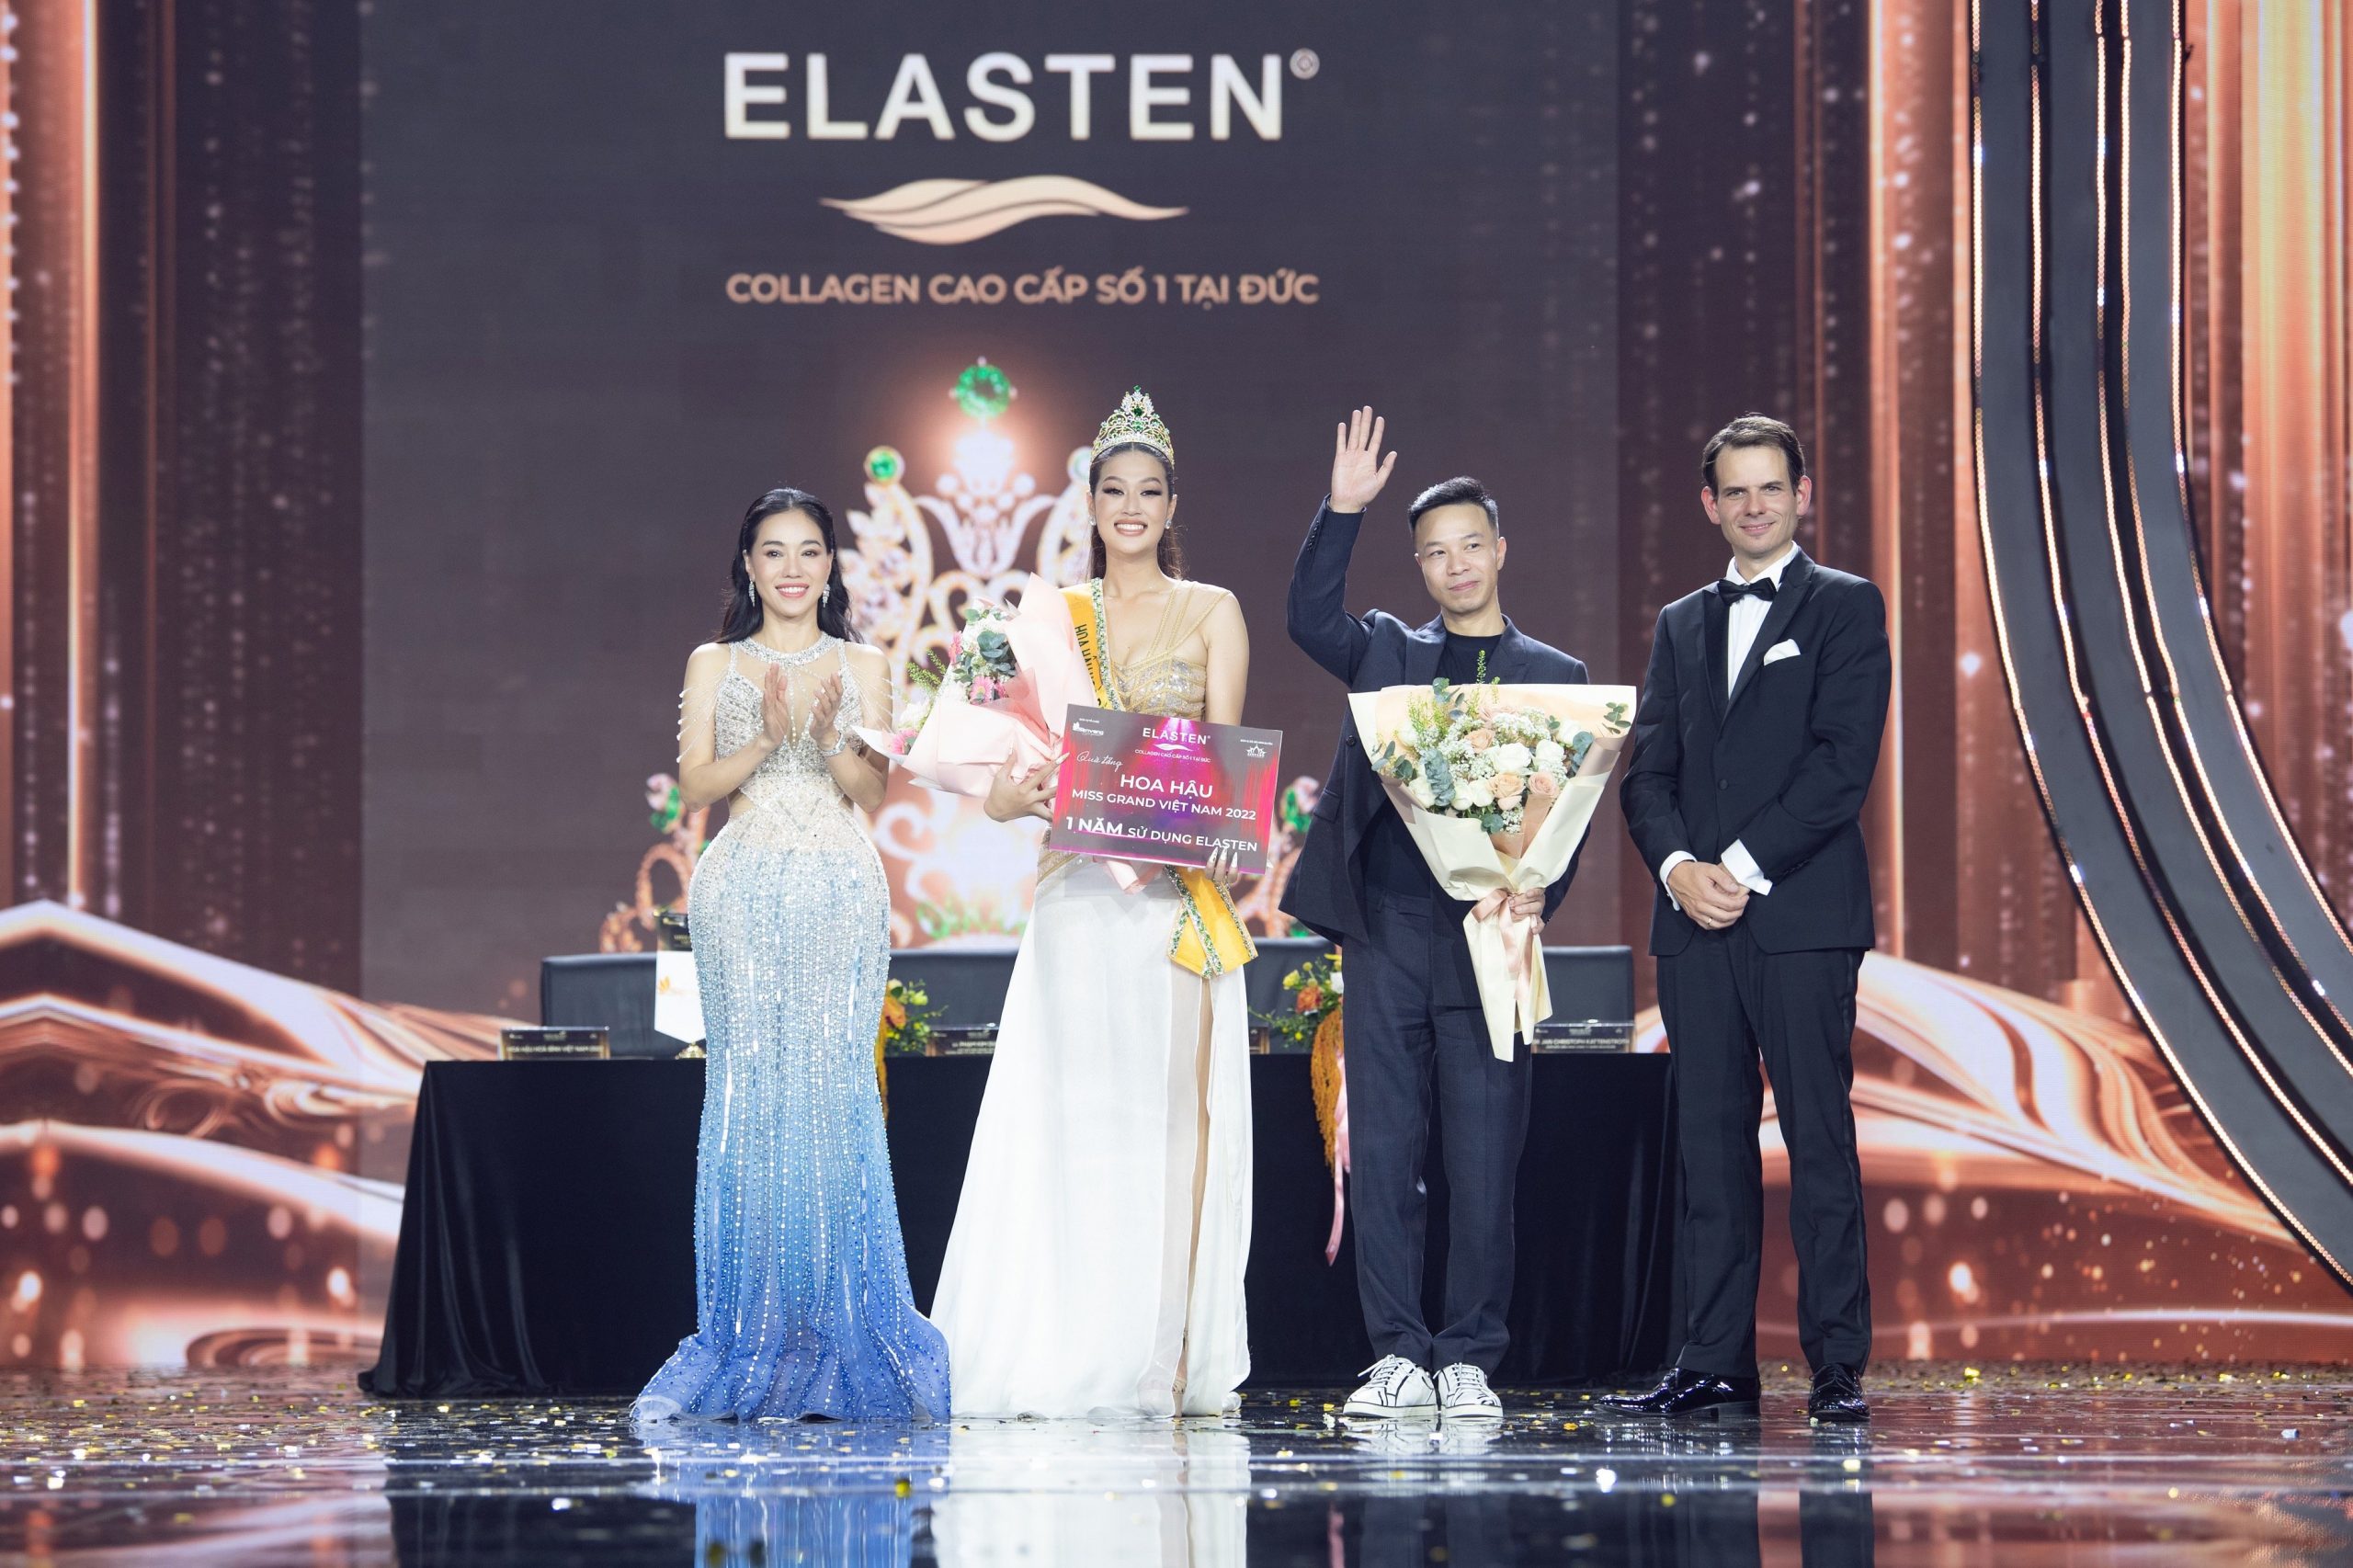 Tân hoa hậu MGVN chính thức trở thành đại sứ thương hiệu cho Elasten – Collagen cao cấp số 1 tại Đức